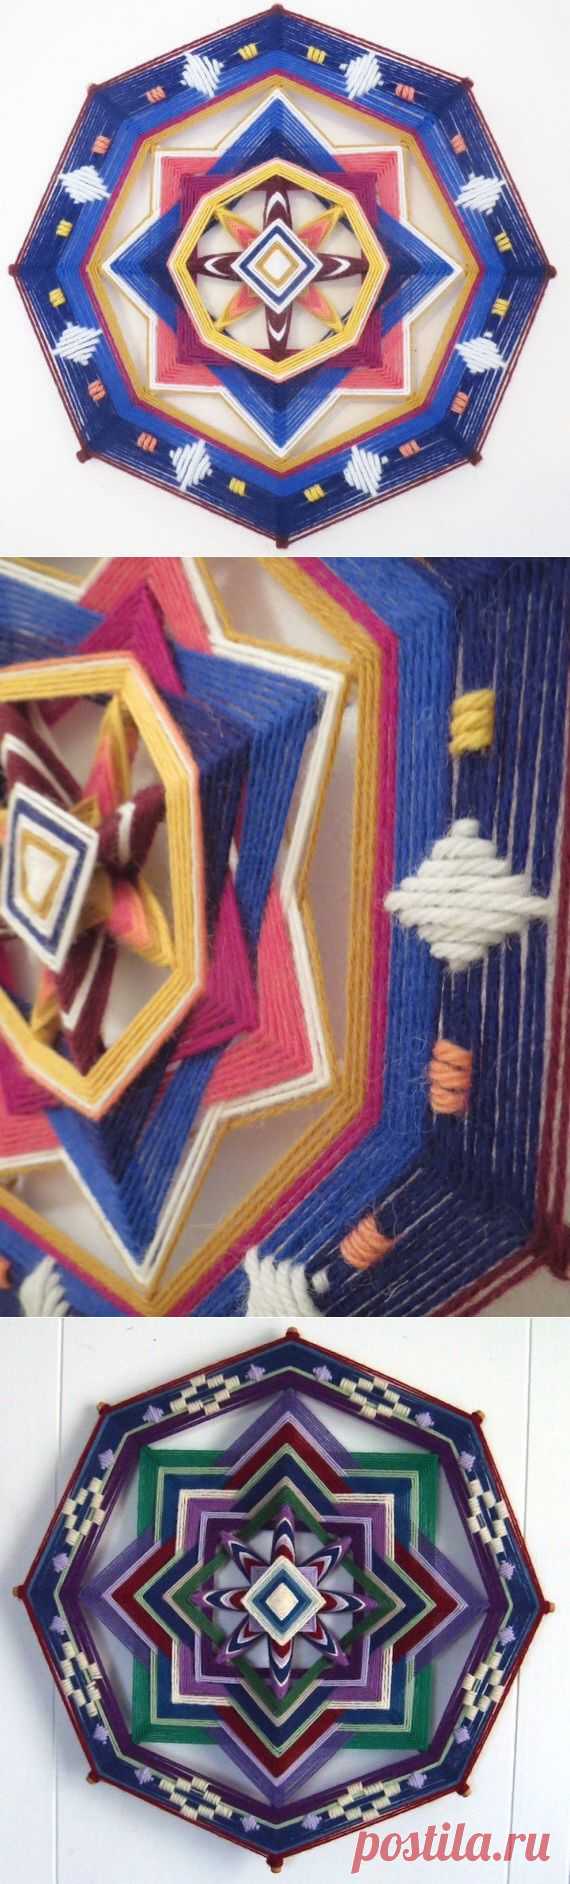 Плетеные мандалы "Ojo de Dios"